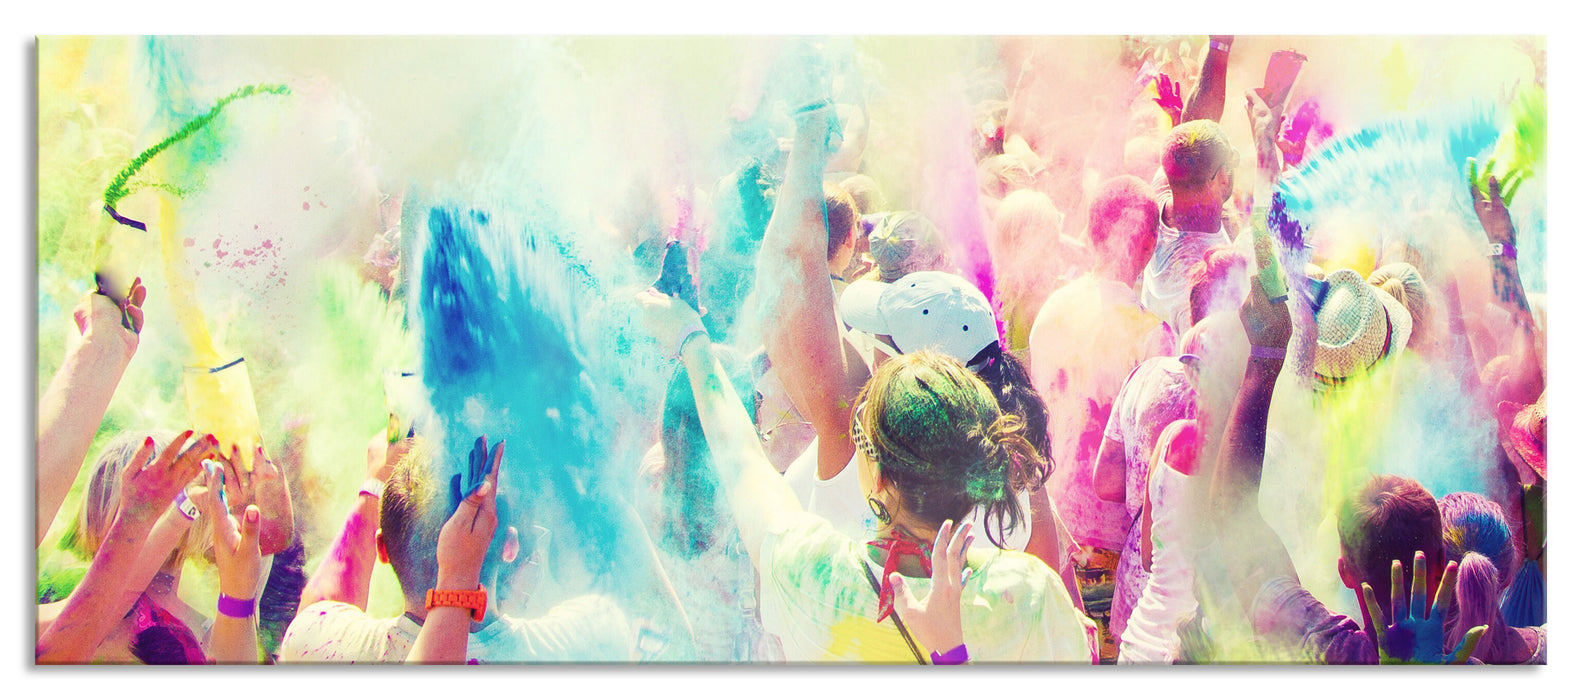 Farben Festival Holi Indien, Glasbild Panorama